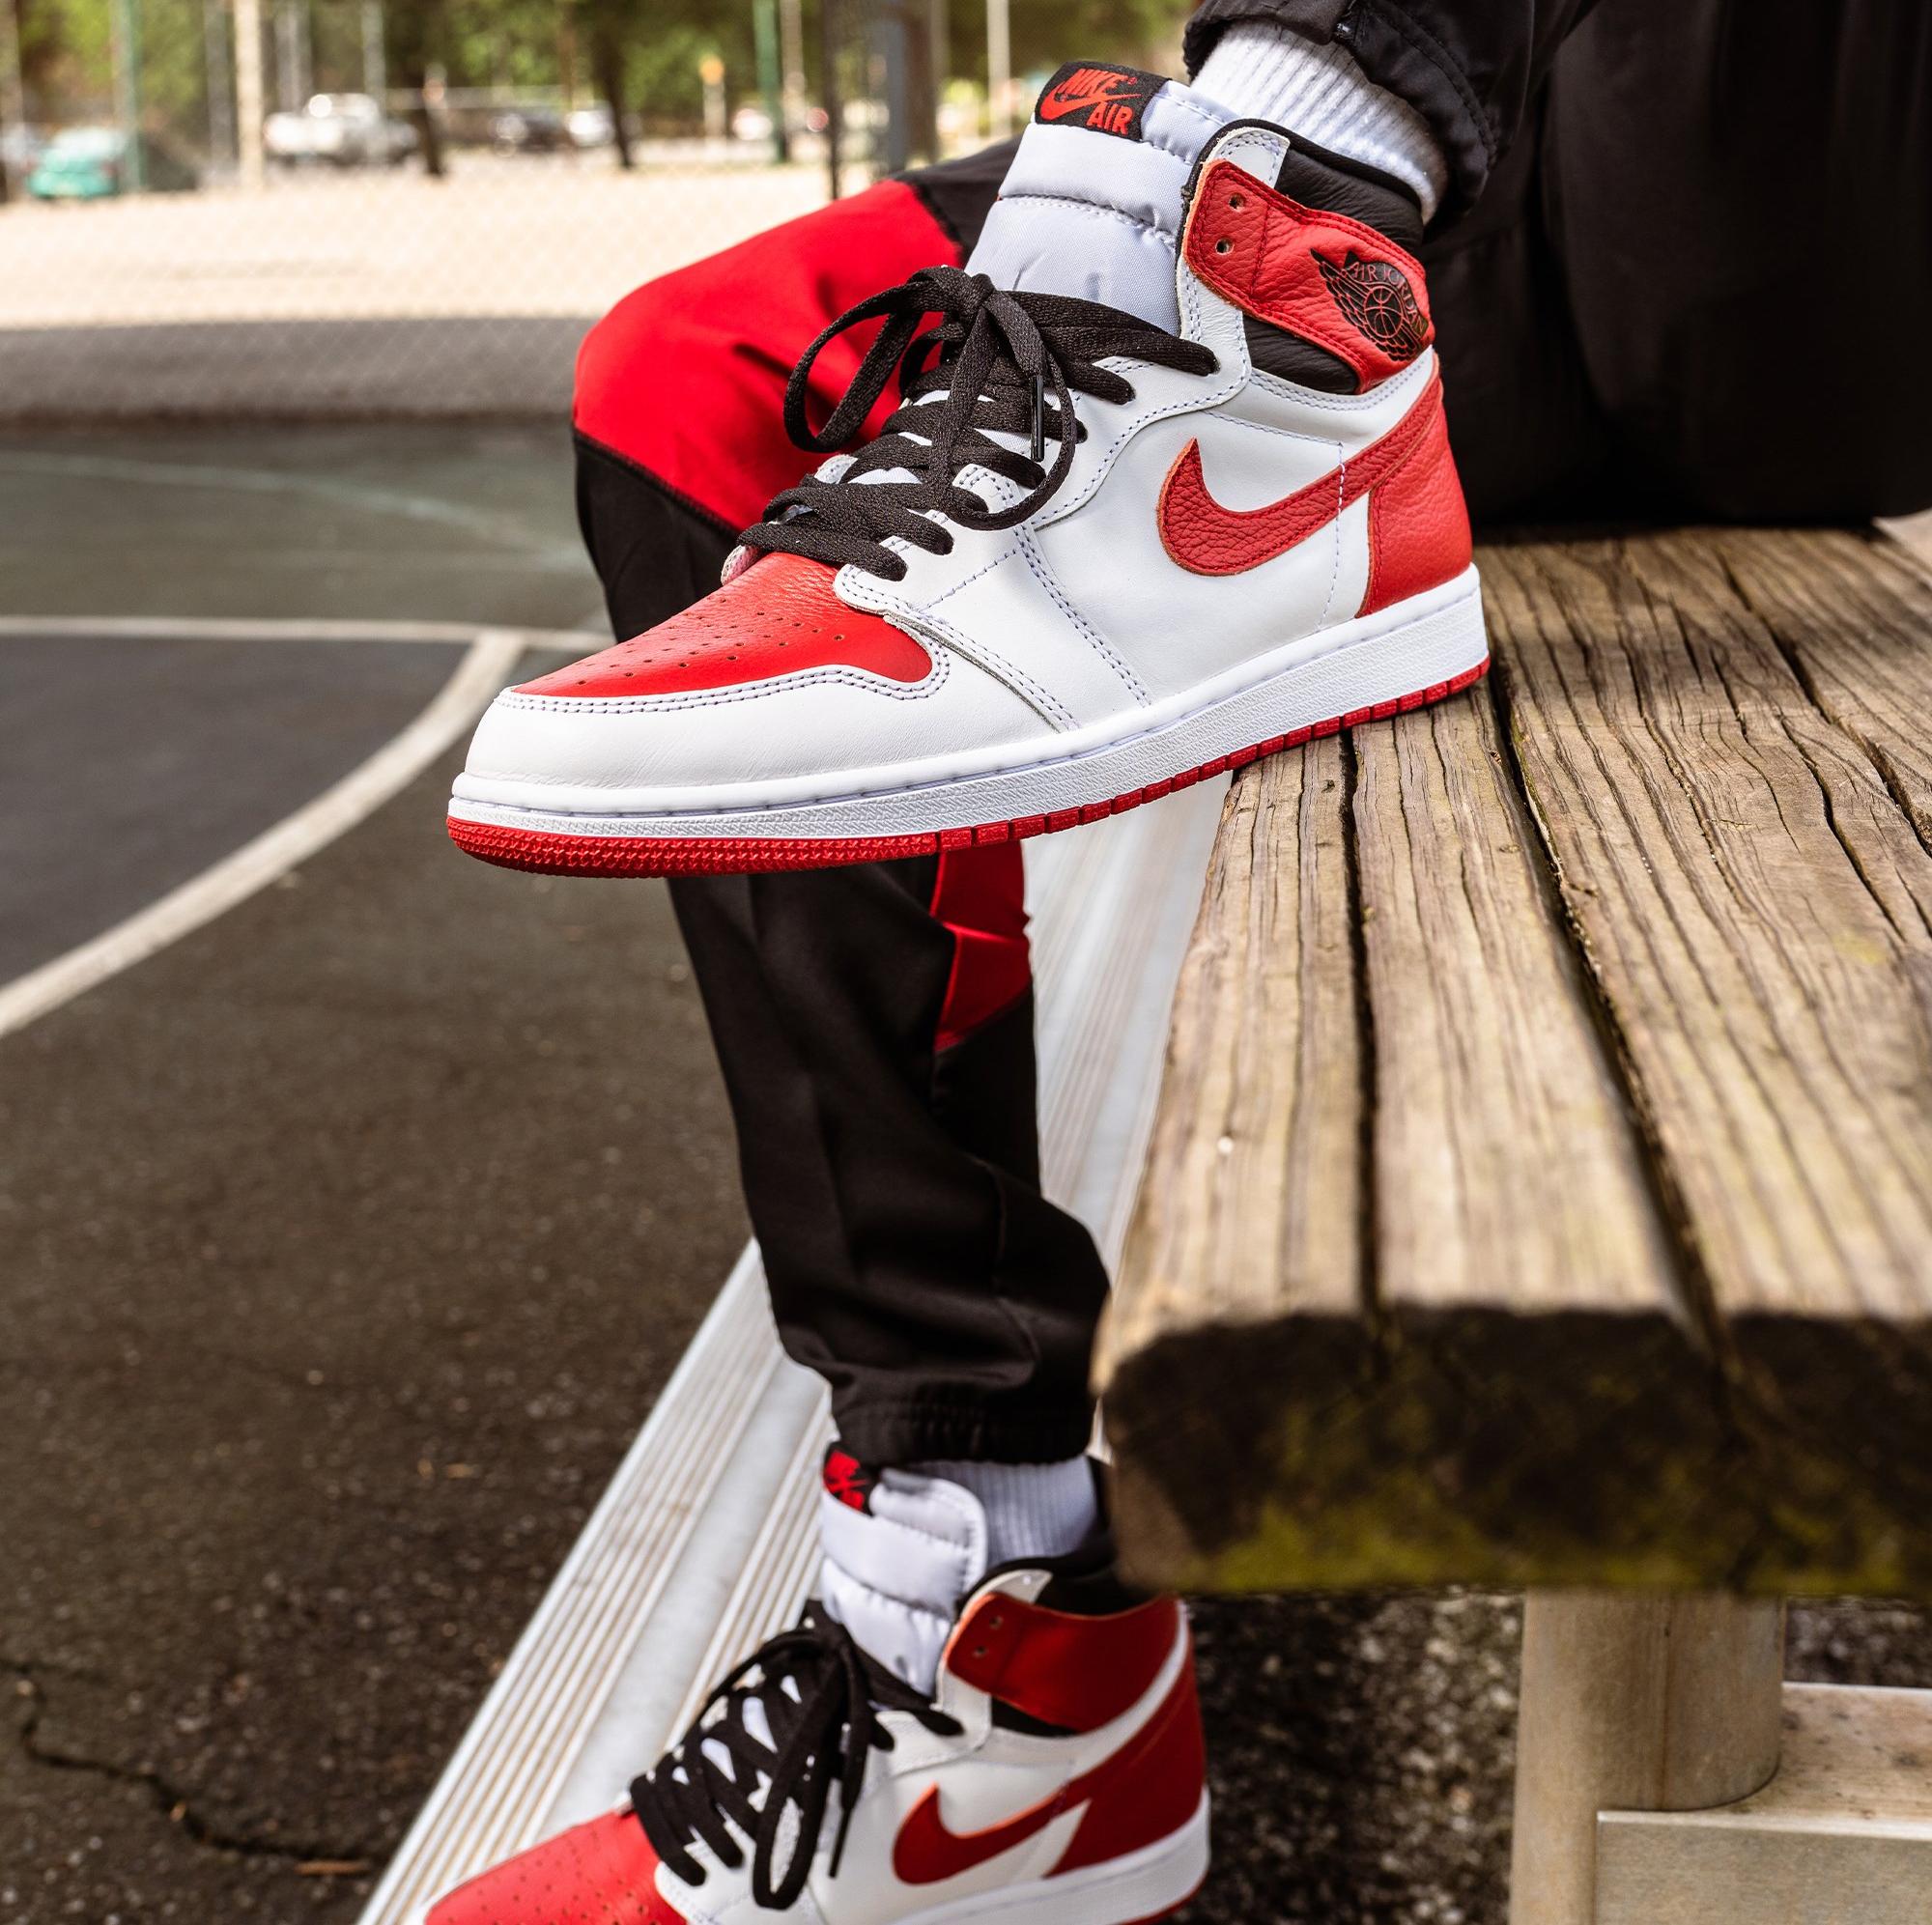 Sneakers Release – Jordan 1 Retro High OG “Patent